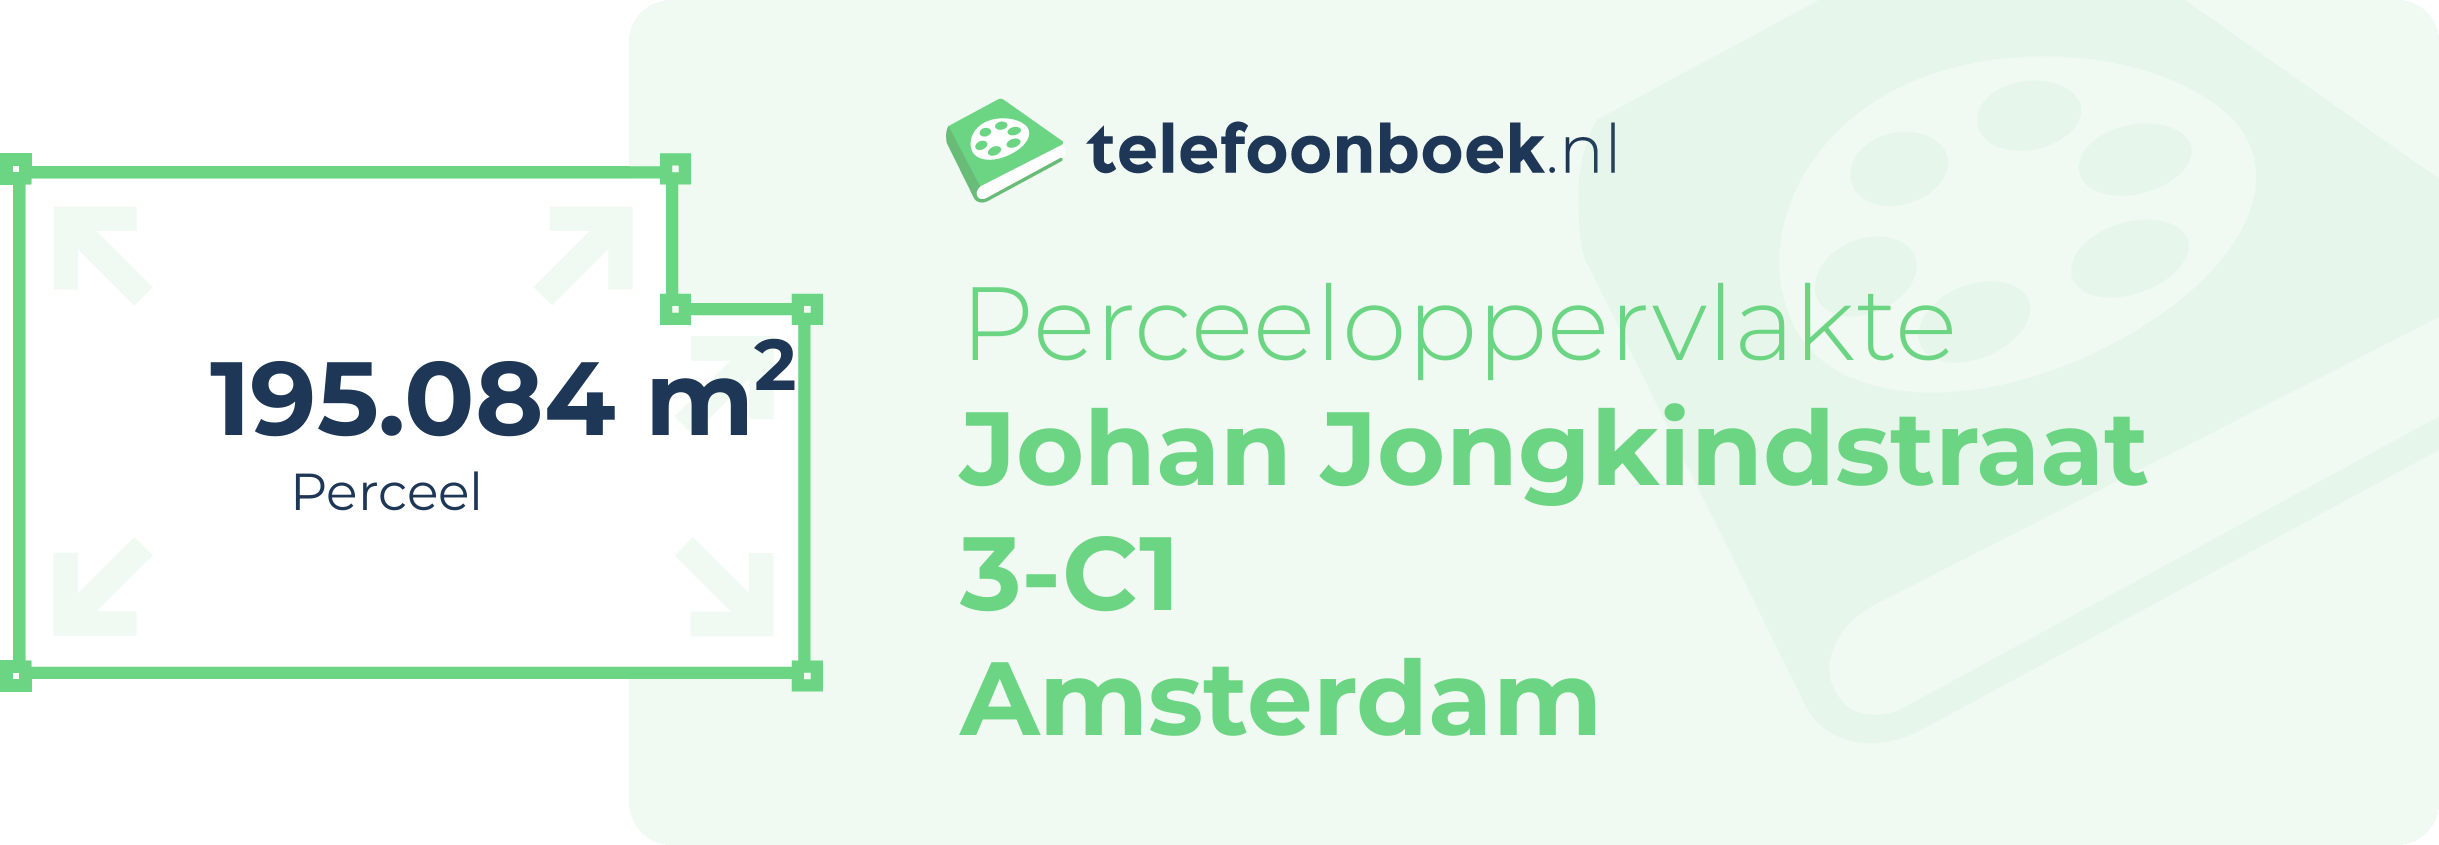 Perceeloppervlakte Johan Jongkindstraat 3-C1 Amsterdam